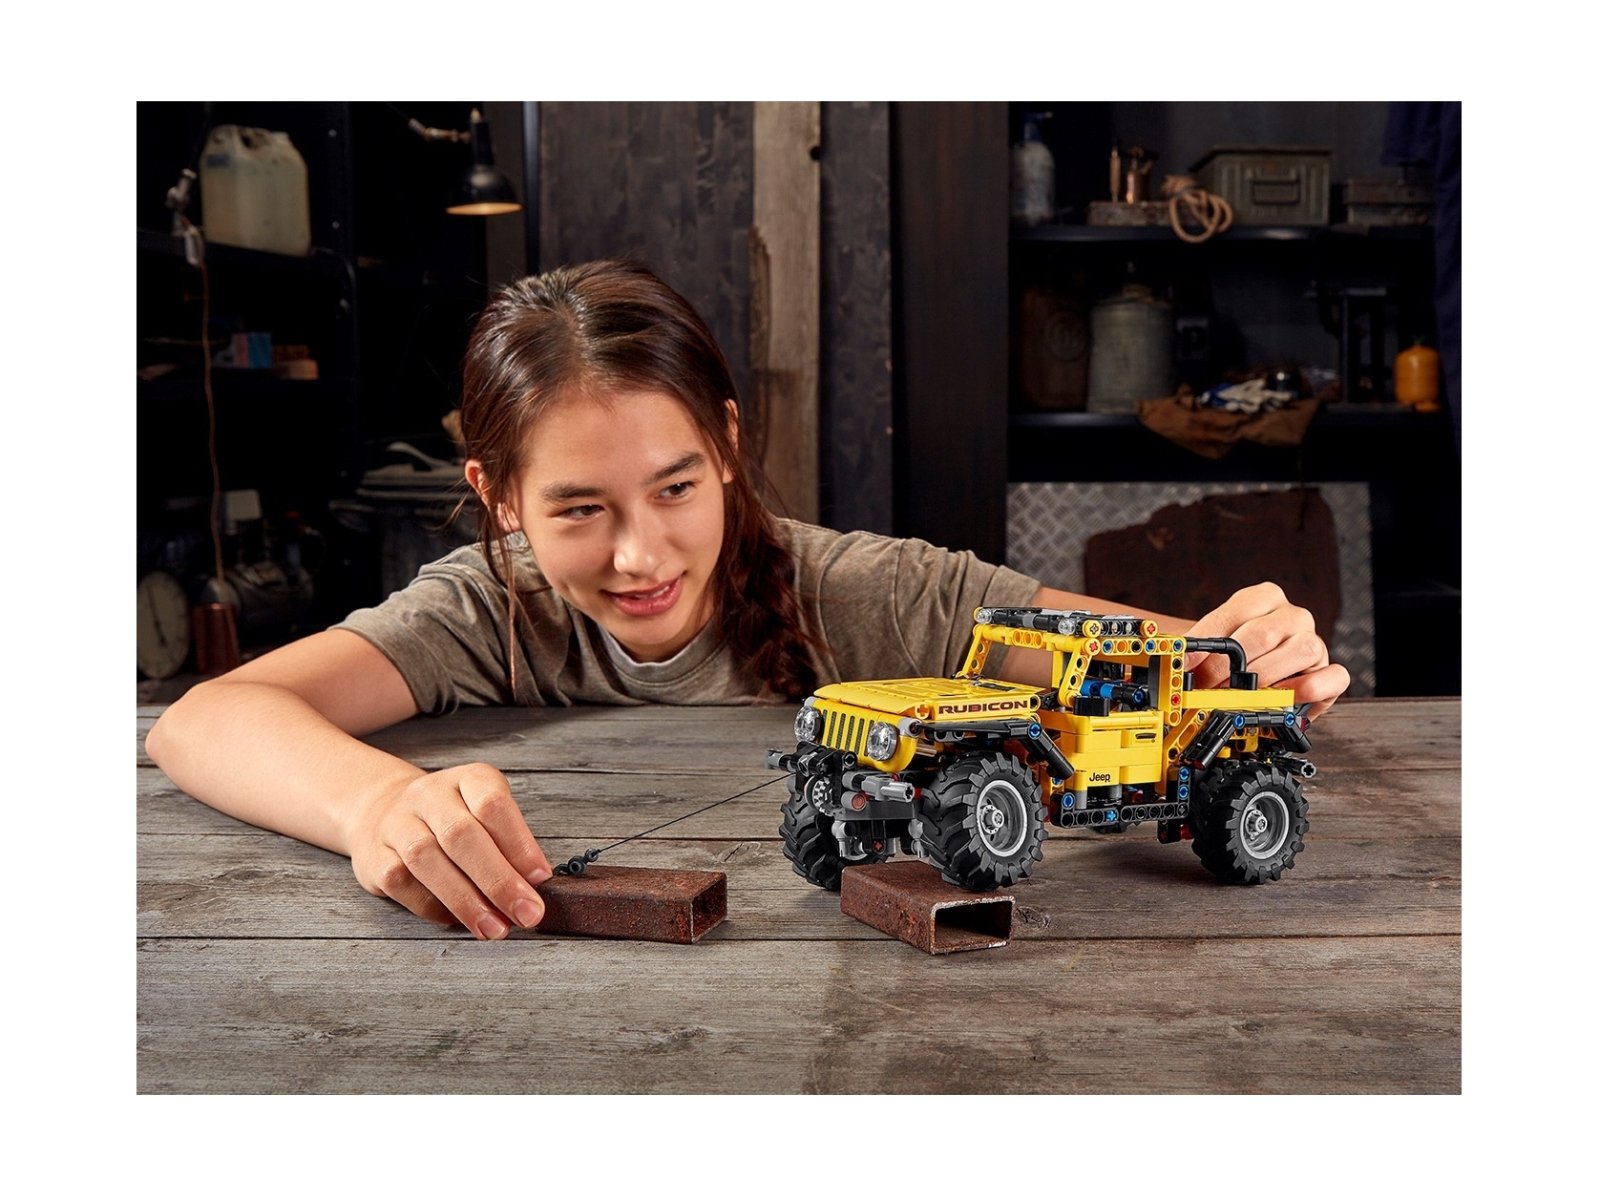 LEGO 42122 Technic Jeep® Wrangler